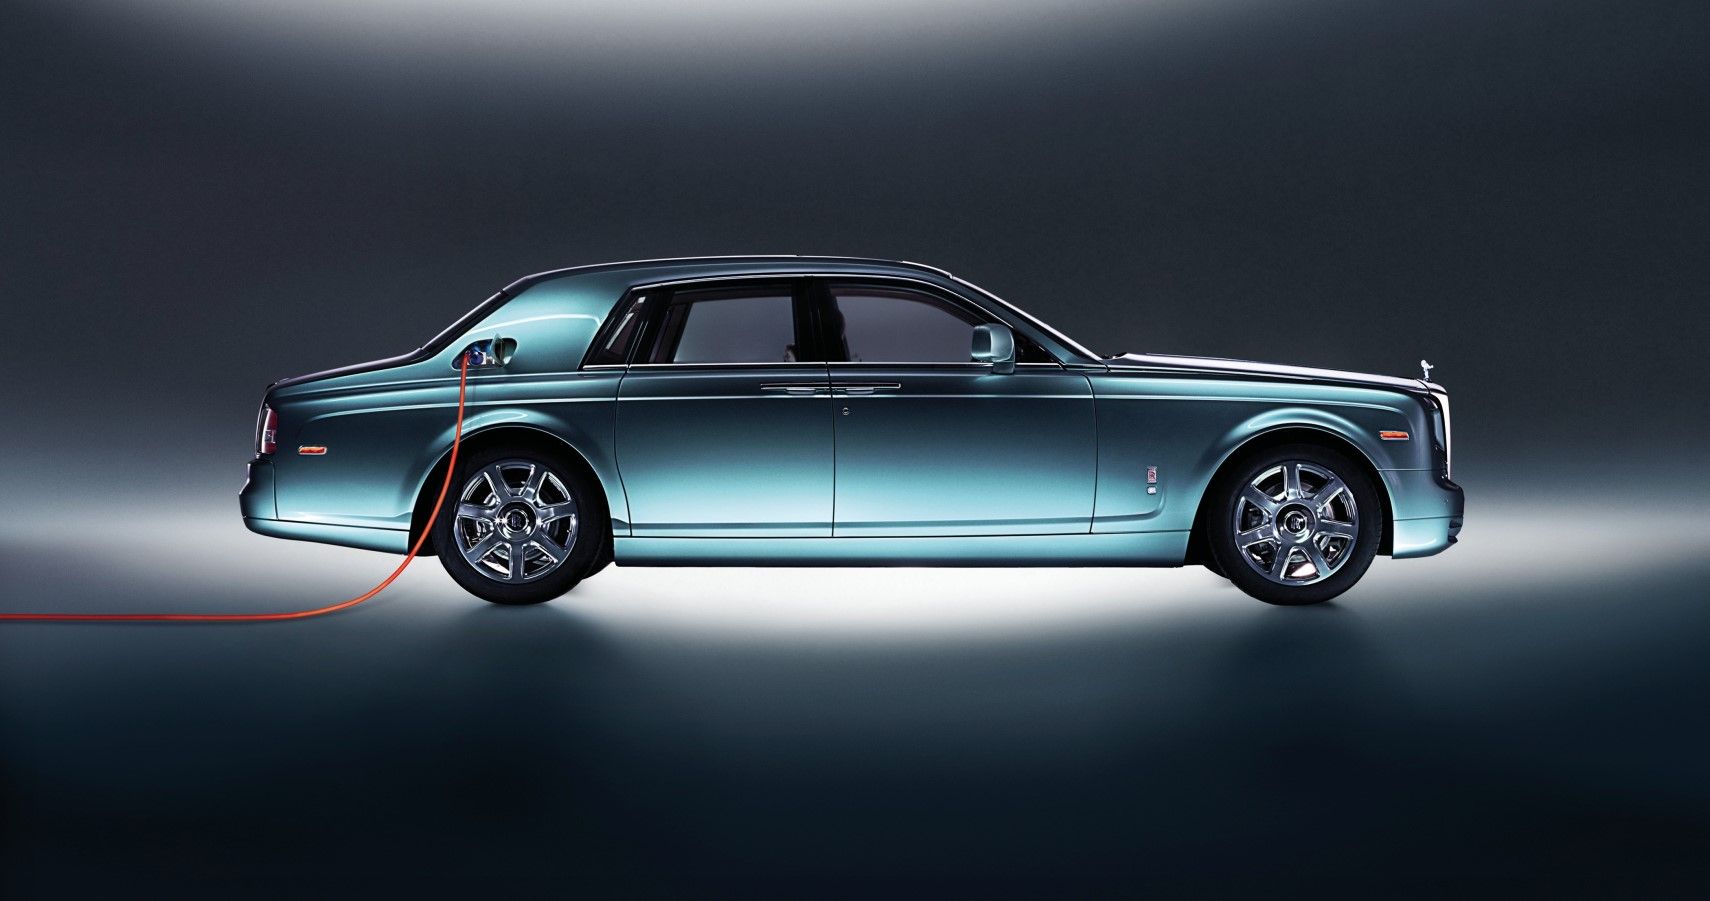 Rolls Royce 102EX was an all-electric phantom